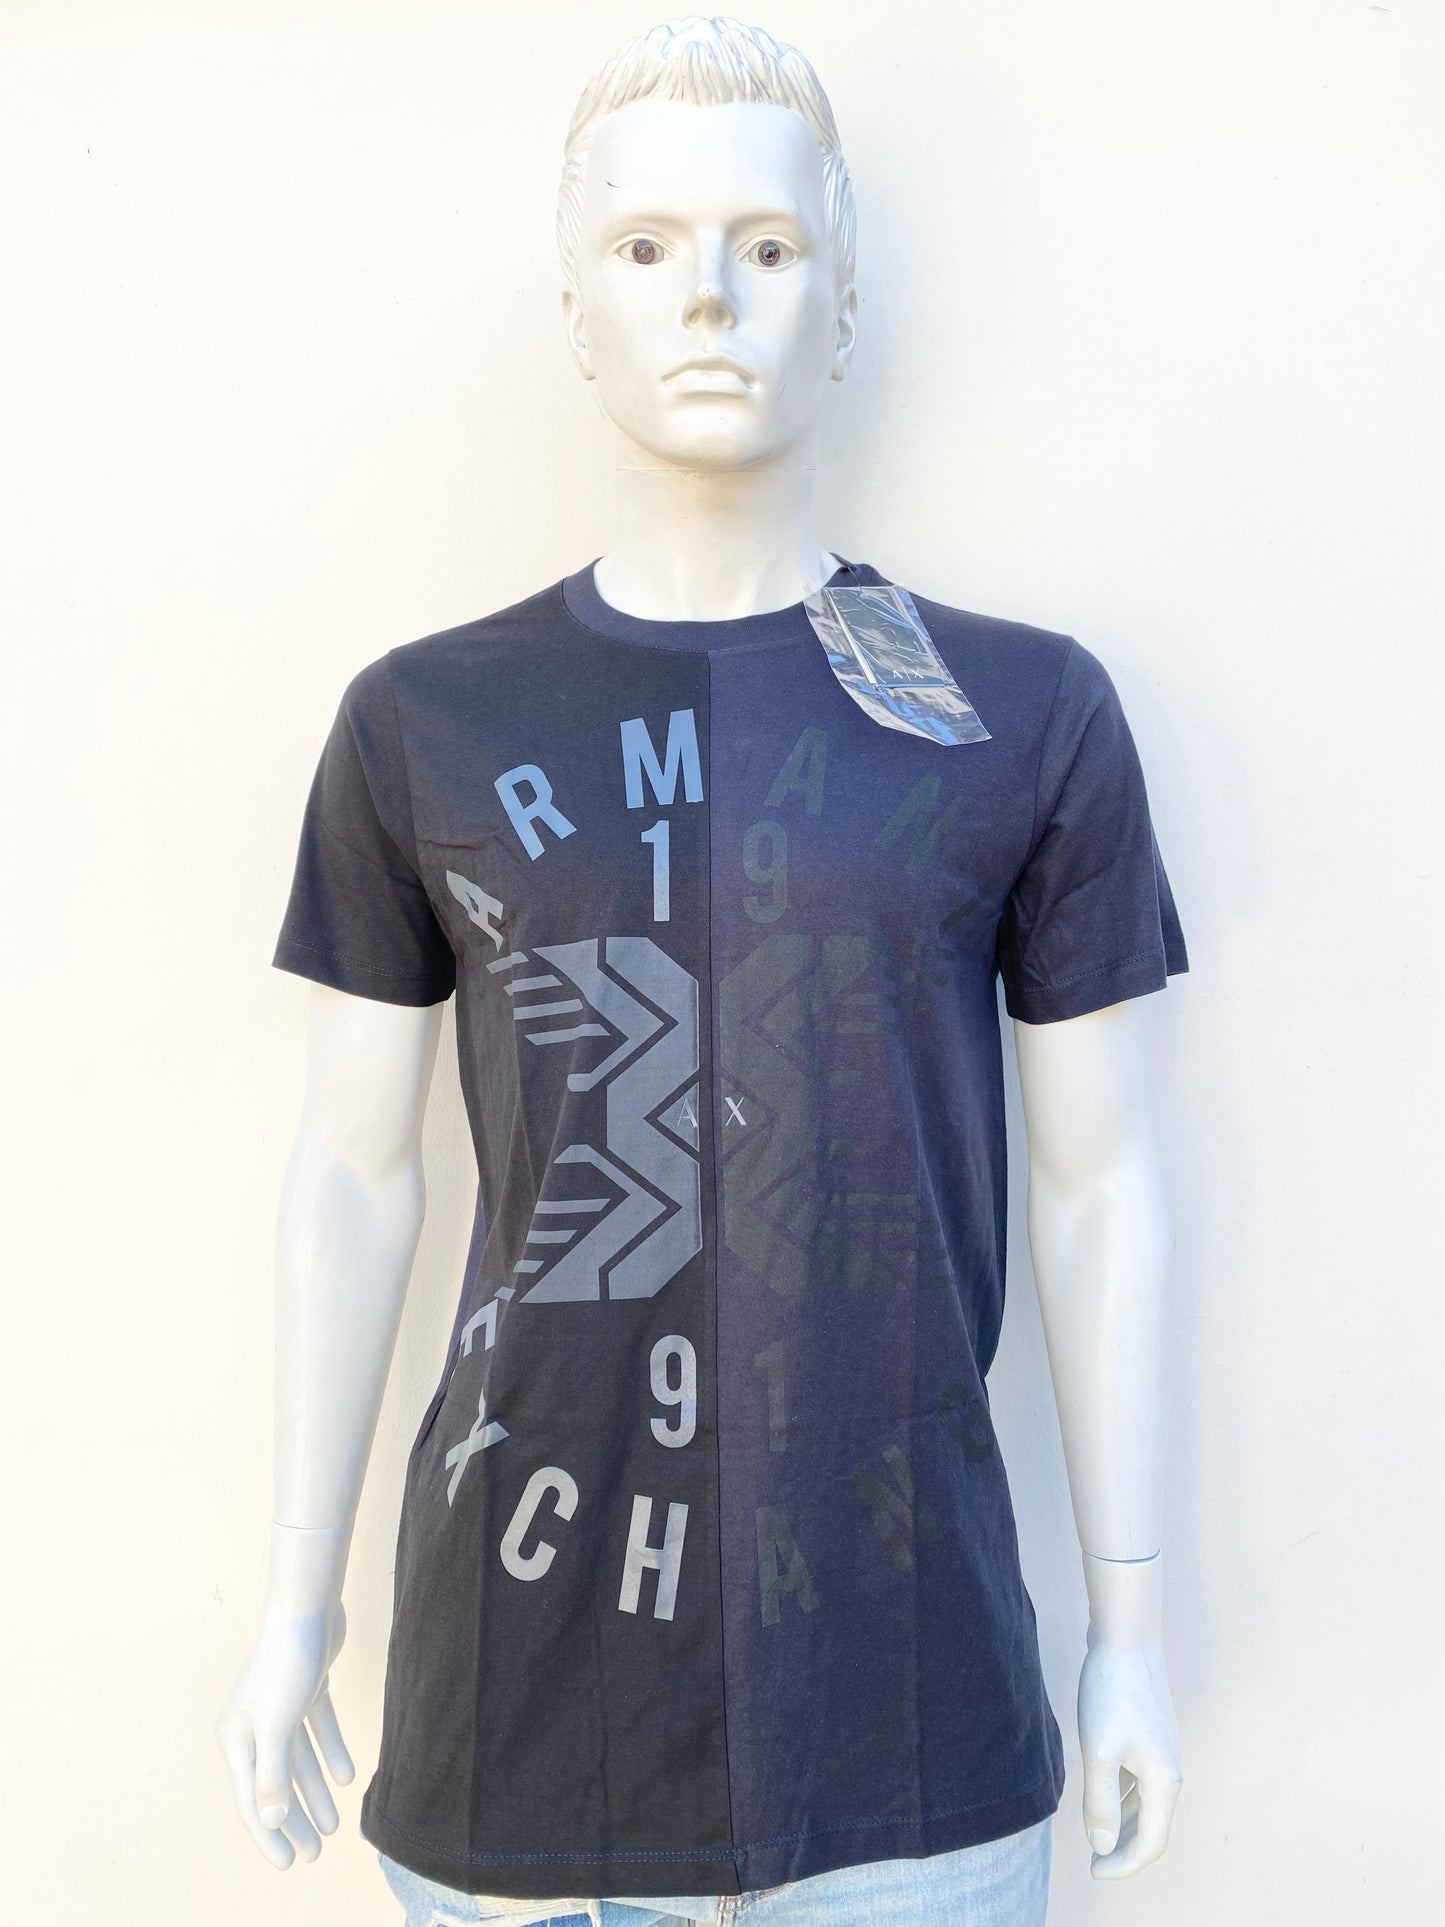 T-shirt Armani Exchange original, negro y azul oscuro, con letras de la marca.